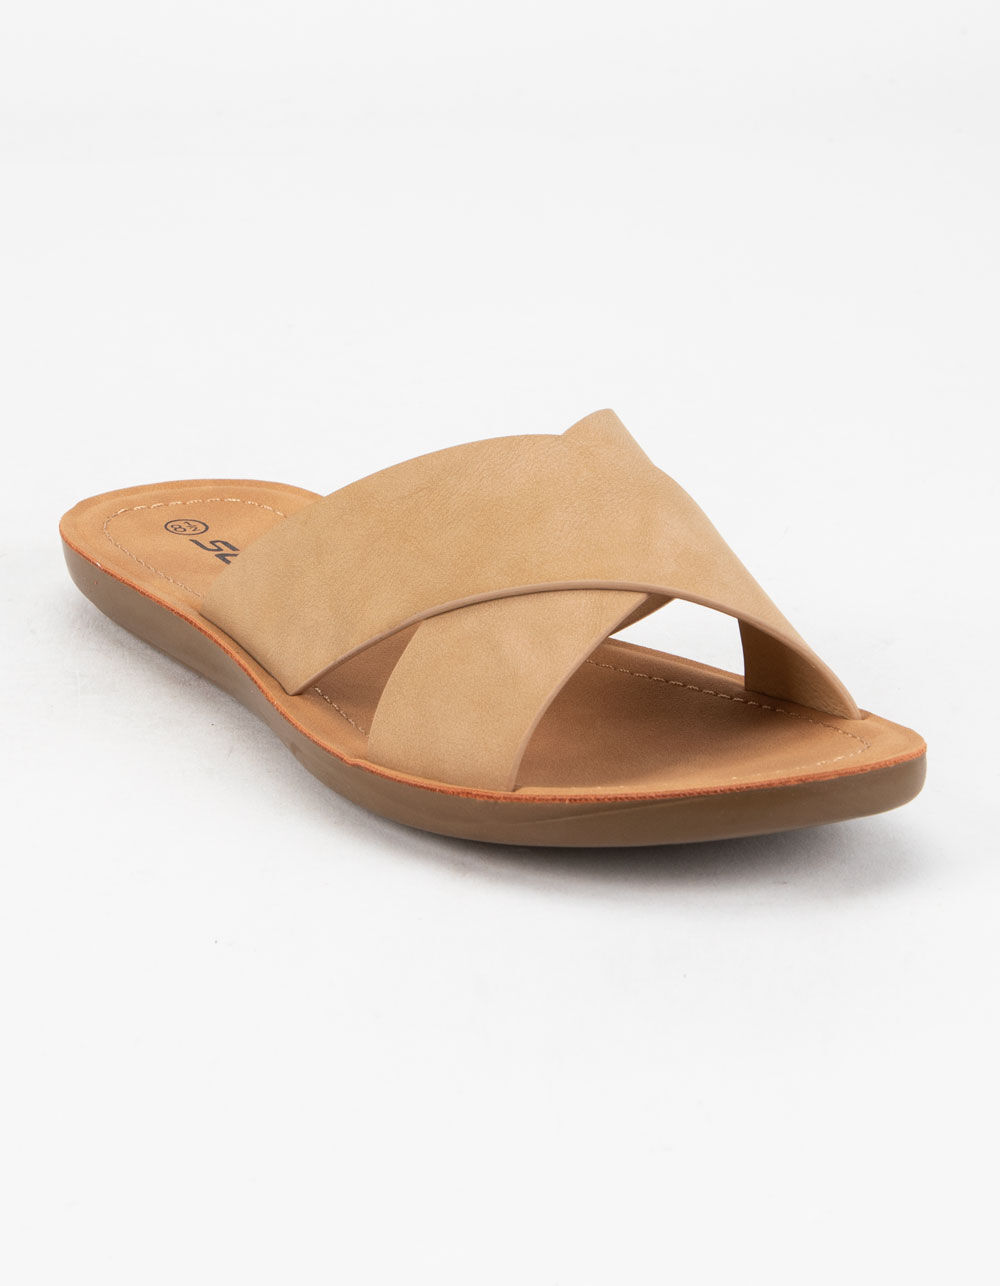 SODA Crisscross Womens Tan Slide Sandals - TAN | Tillys